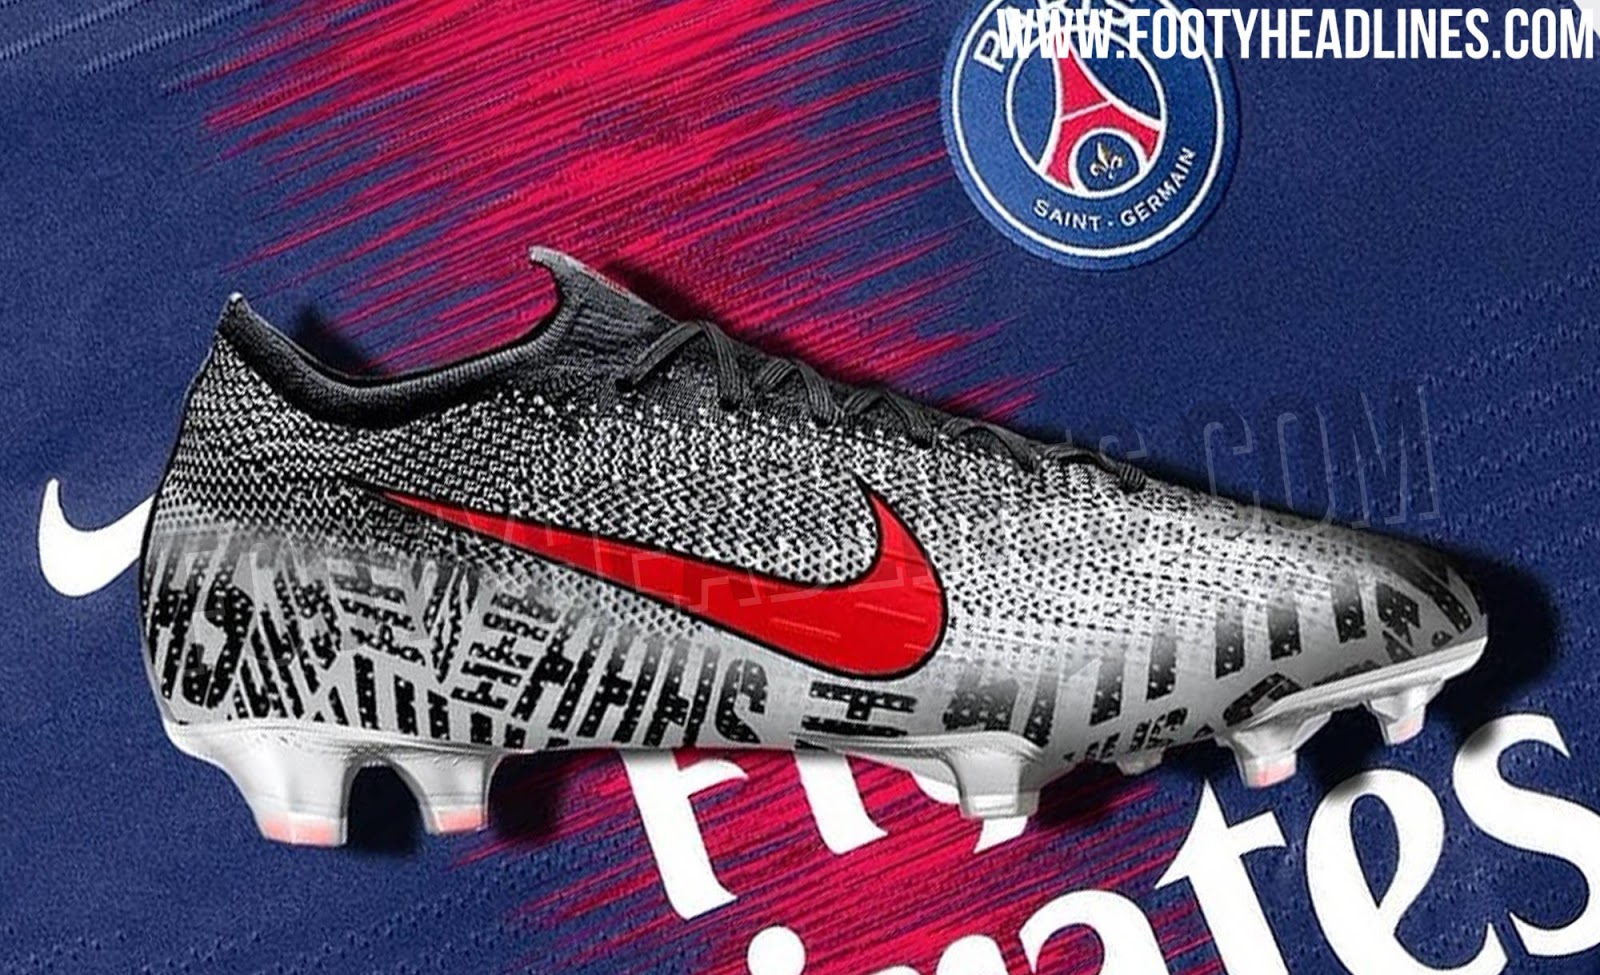 neymar soccer boots 2019